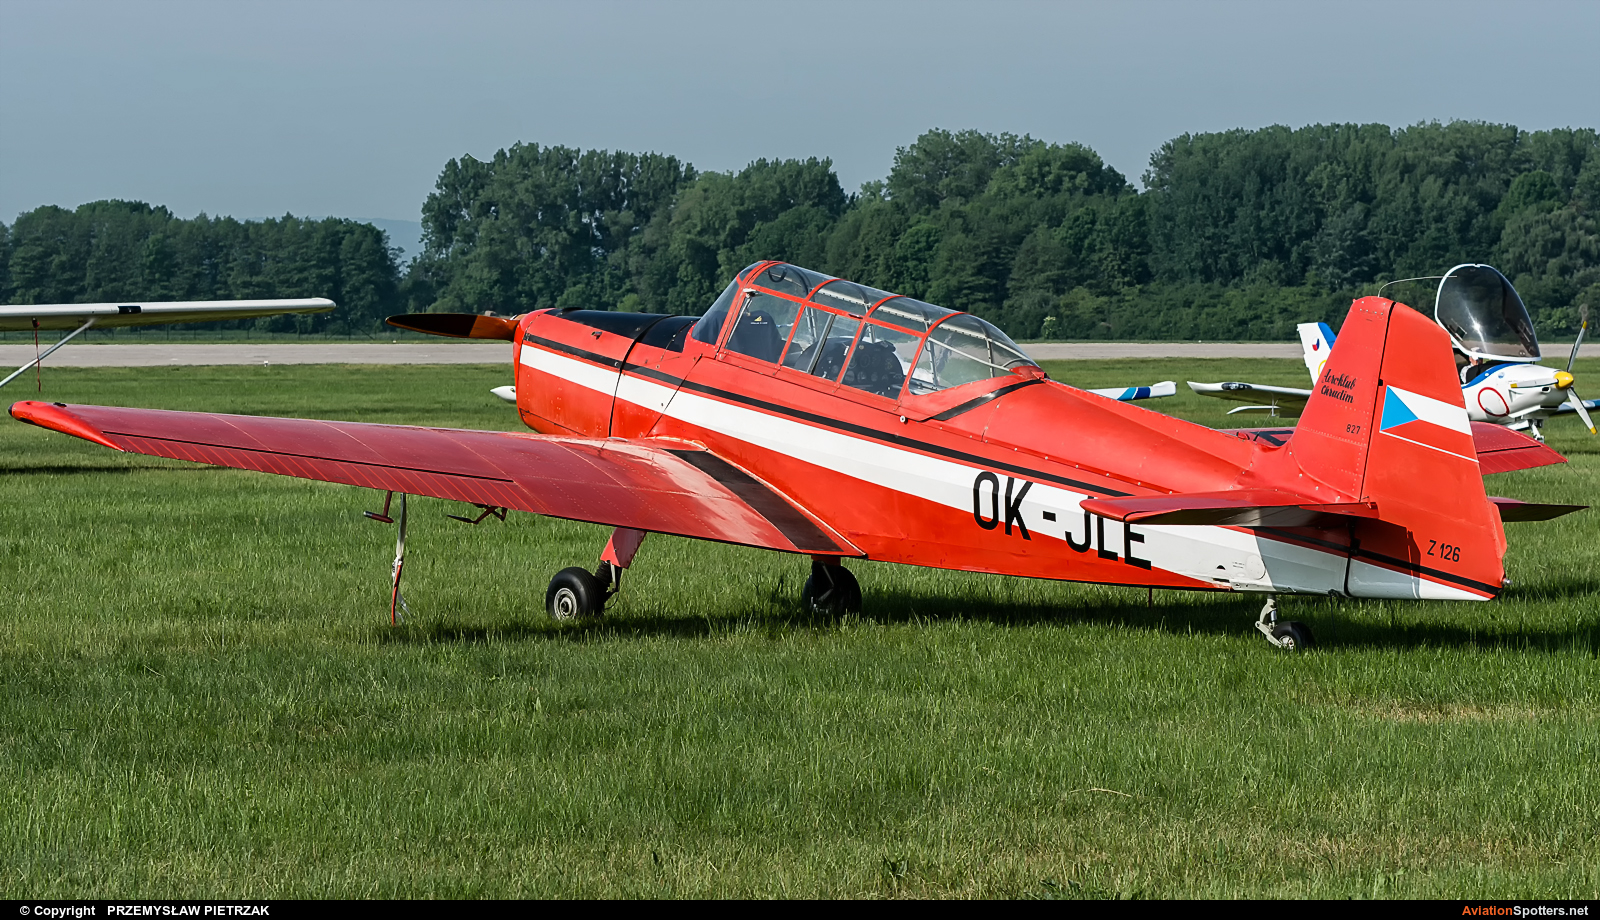 Aeroklub Chrudim  -  Z-126  (OK-JLE) By PRZEMYSŁAW PIETRZAK (PEPE74)